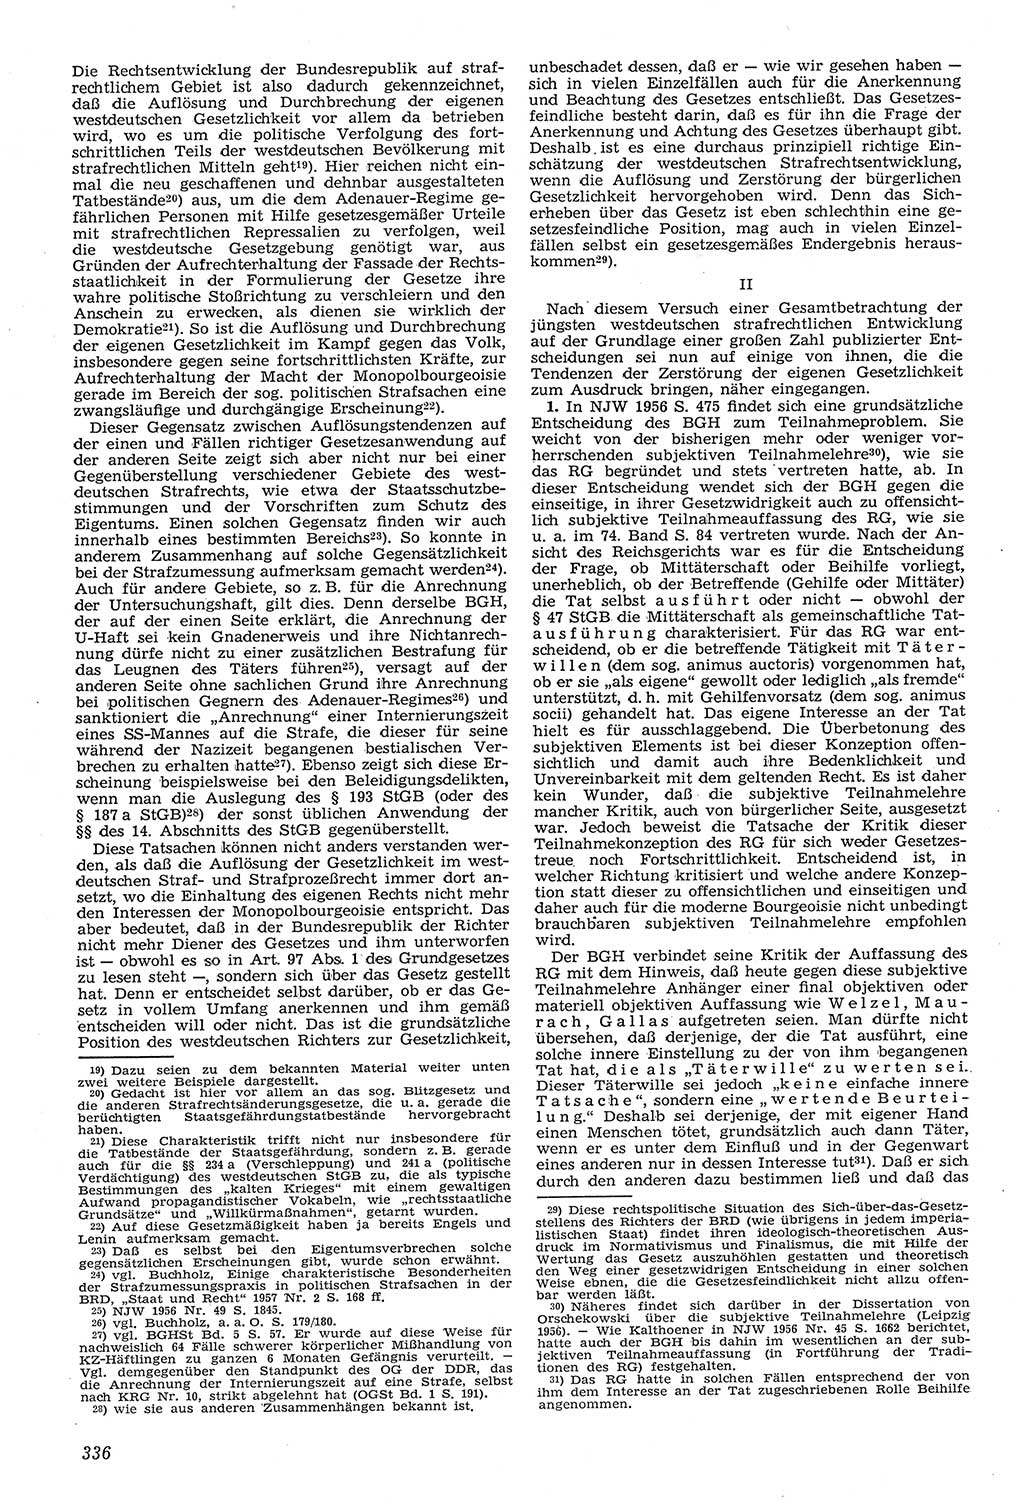 Neue Justiz (NJ), Zeitschrift für Recht und Rechtswissenschaft [Deutsche Demokratische Republik (DDR)], 11. Jahrgang 1957, Seite 336 (NJ DDR 1957, S. 336)